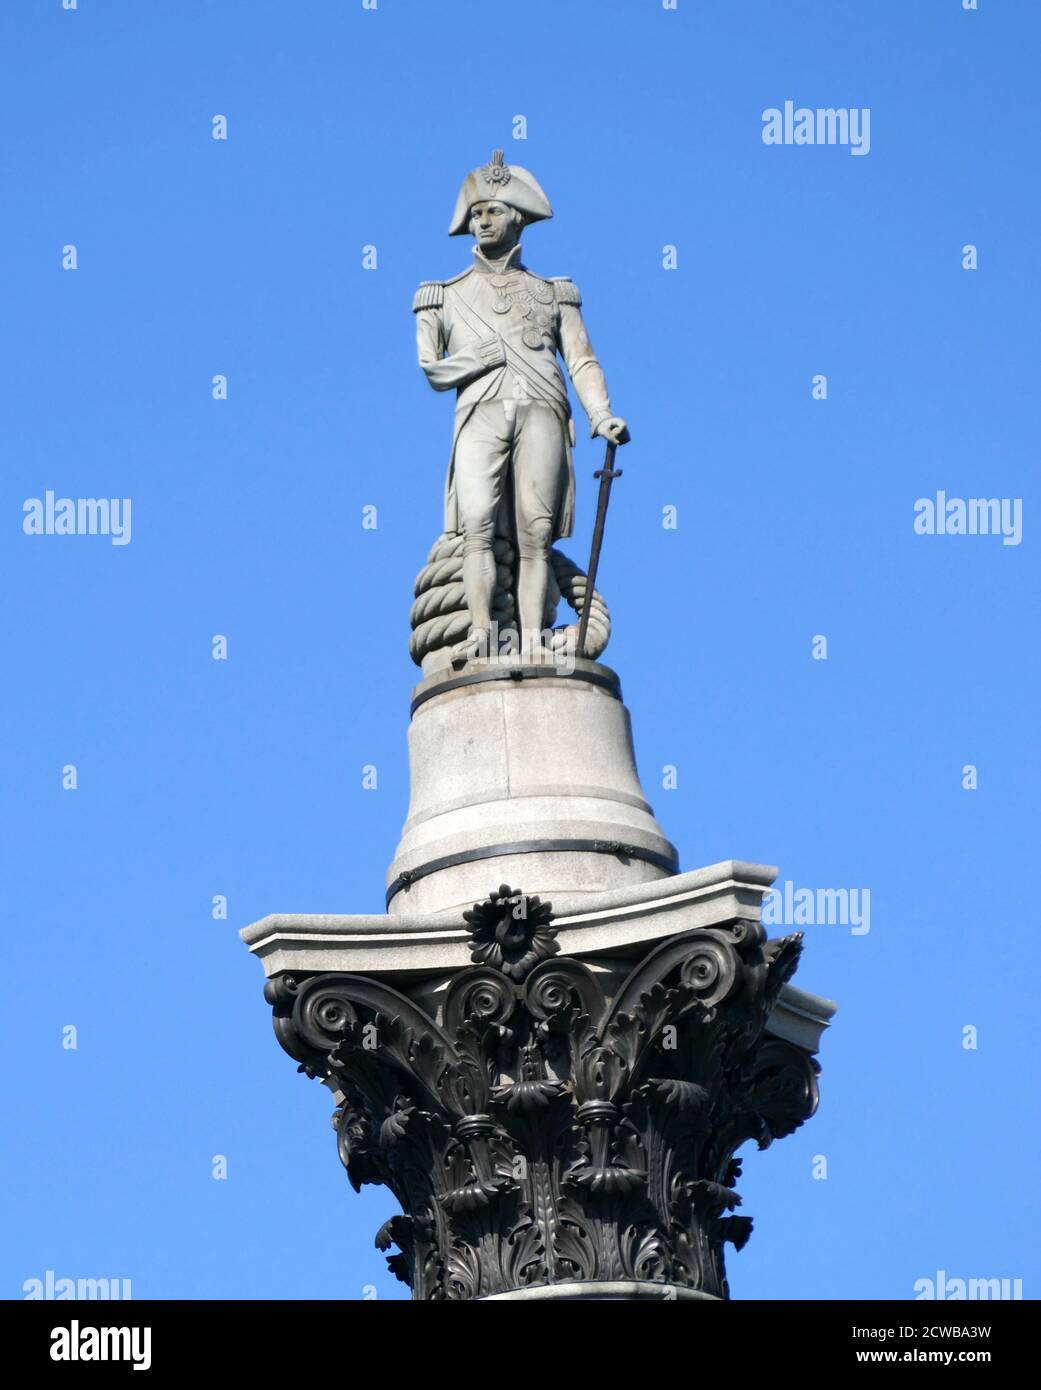 La colonna di Nelson è un monumento in Trafalgar Square, nella città di Westminster, nel centro di Londra, costruito per commemorare l'ammiraglio Horatio Nelson, morto nella battaglia di Trafalgar nel 1805. Il monumento fu costruito tra il 1840 e il 1843 su progetto di William Railton Foto Stock